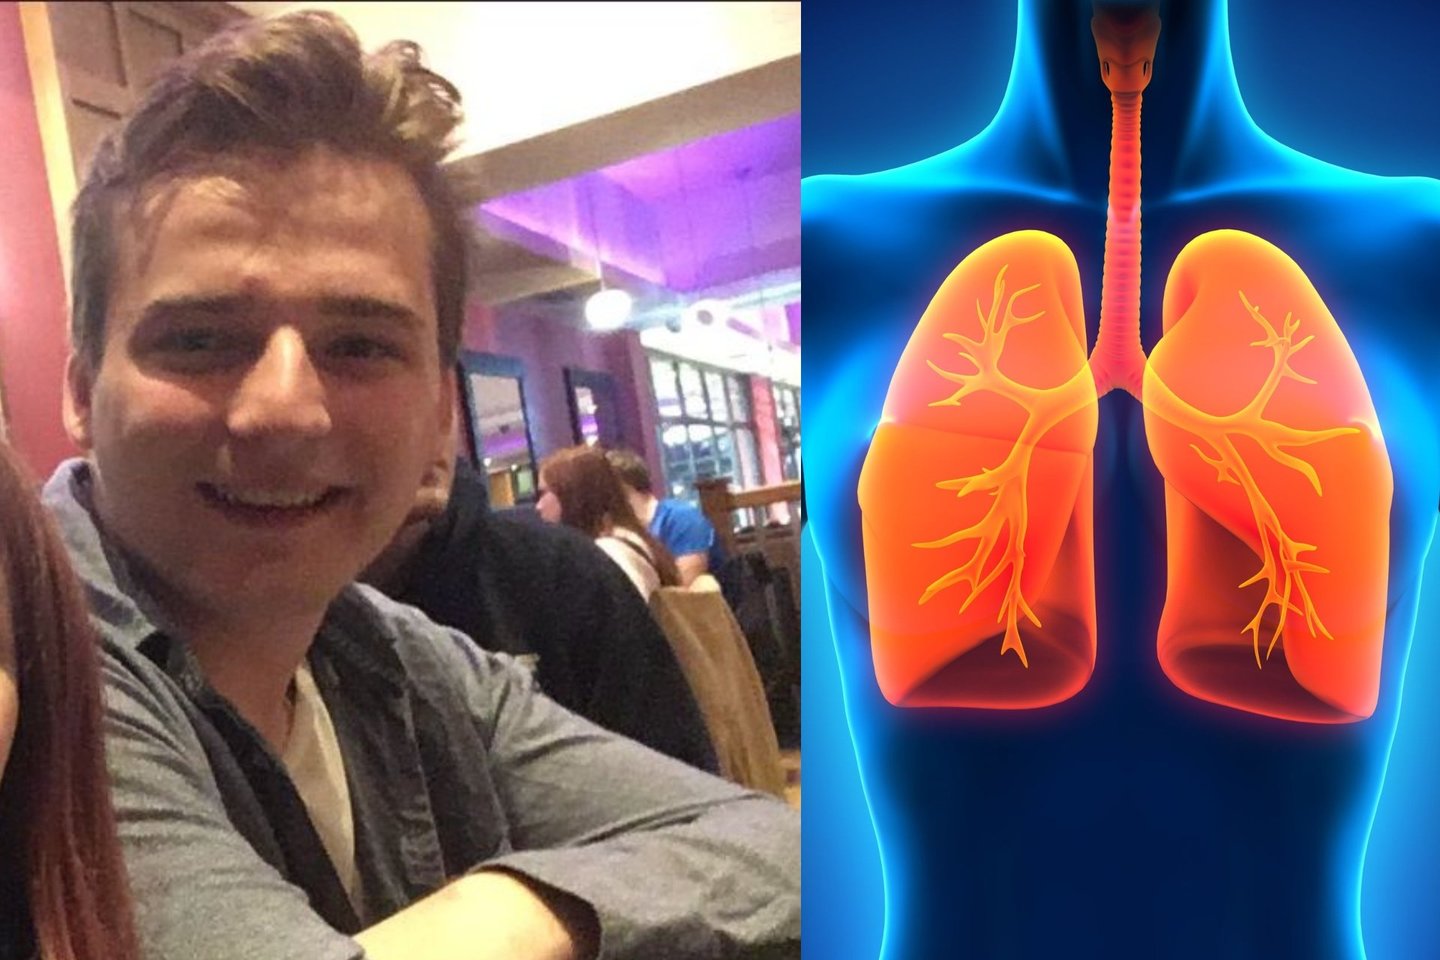  Alastairui buvo diagnozuota astma, bet buvo keista tai, kad inhaliatorius ir kitos gydymo priemonės visai nepadėjo.<br> Twitter ir 123rf nuotr.